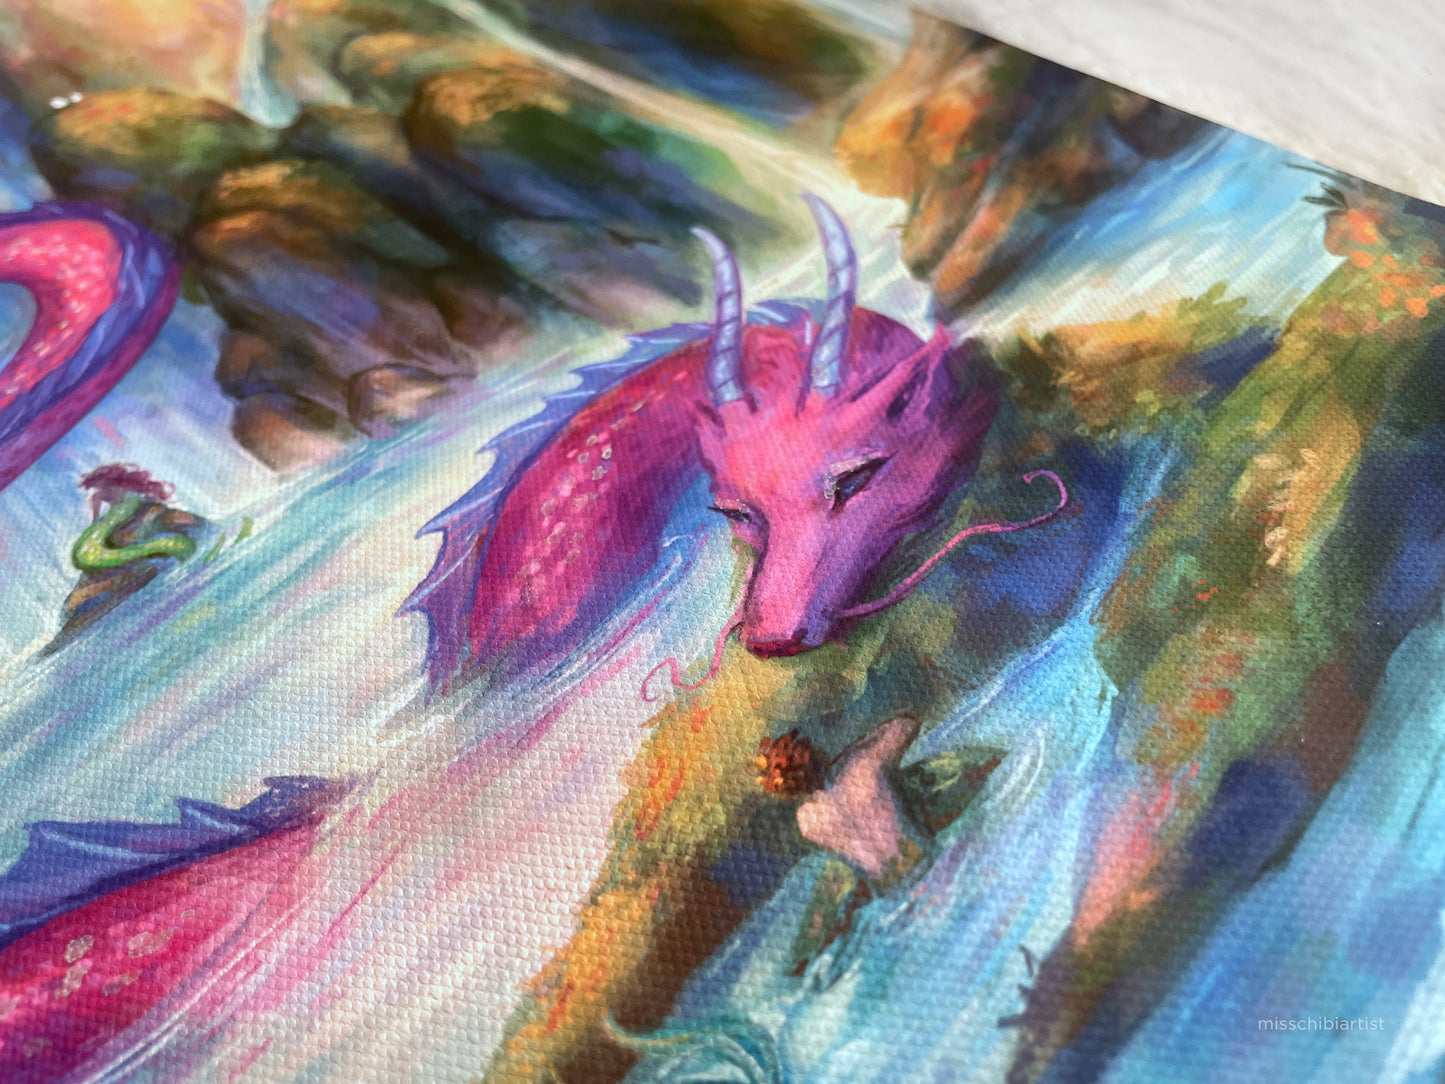 Dragon Bath | Embellished Canvas Art Print